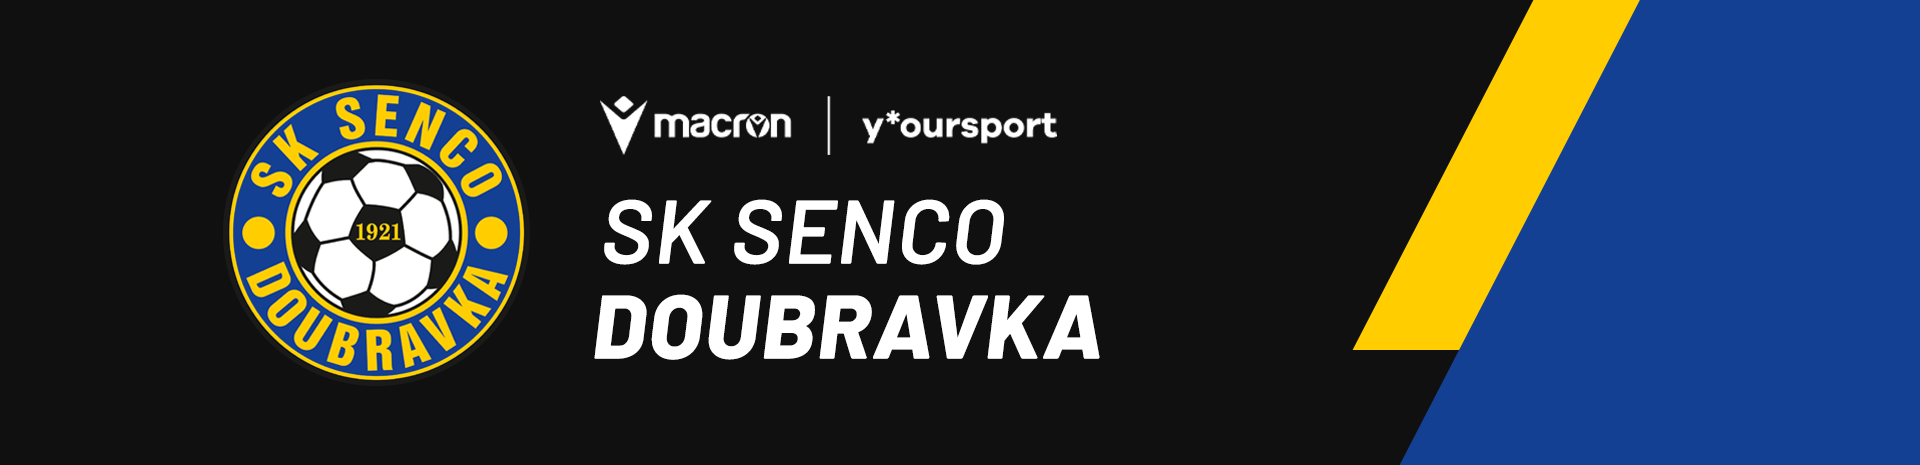 SK Senco Doubravka desktop